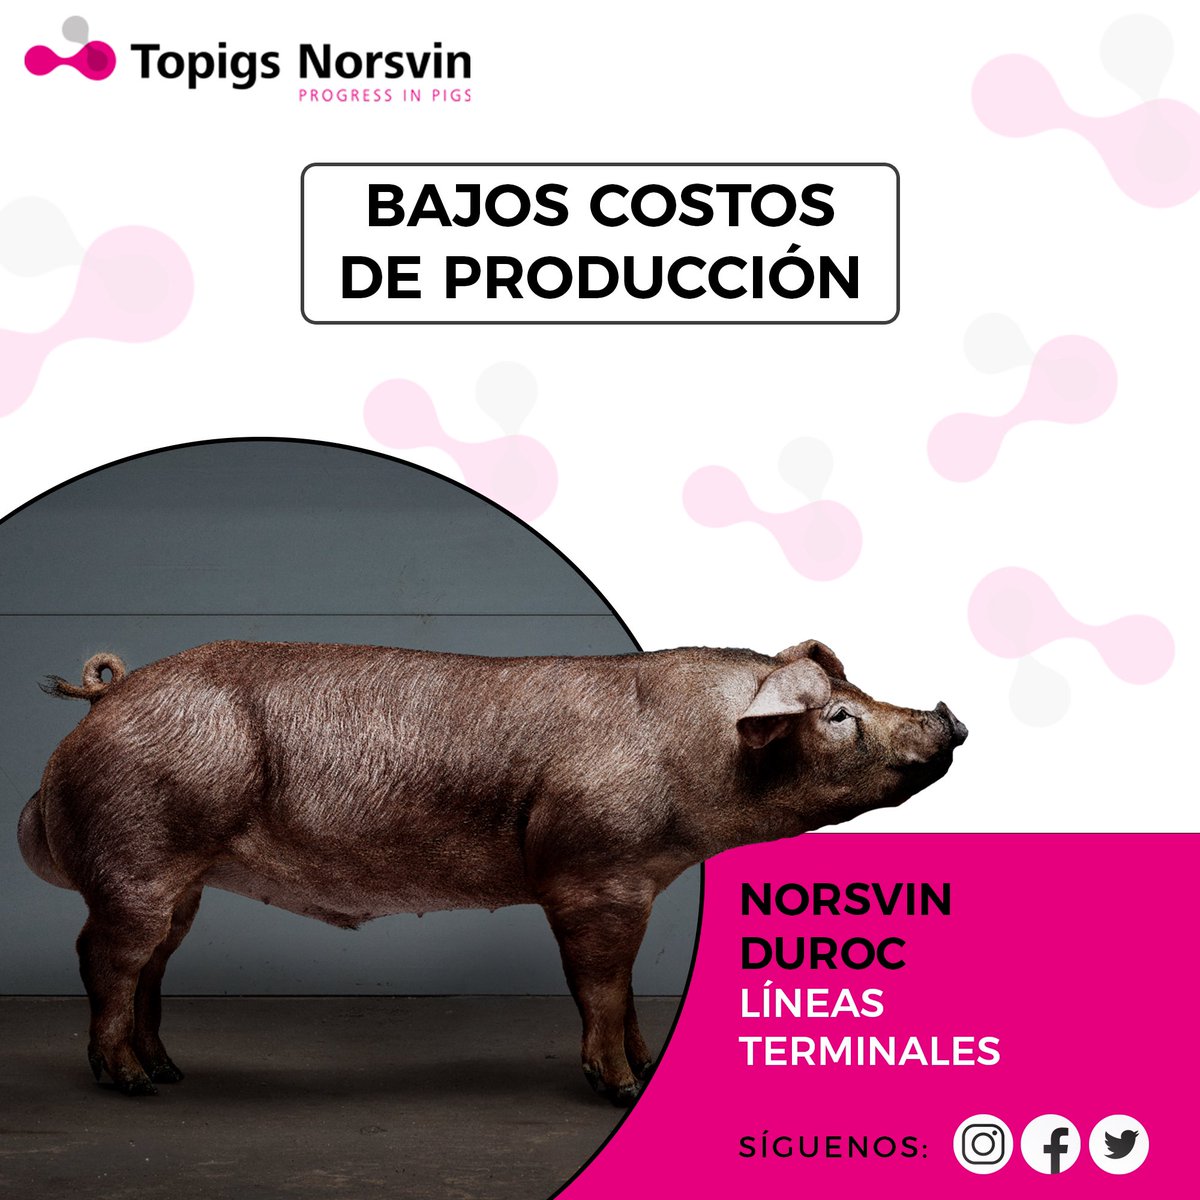 La línea terminal Norsvin Duroc es robusta, productiva y magra. 
Progenie con alta vitalidad y gran ganancia de peso diaria.

Ideal para productores que buscan bajos costos de producción combinados con una excelente calidad de carne.

#TopigsNorsvin #Progressinpigs #Ecuador